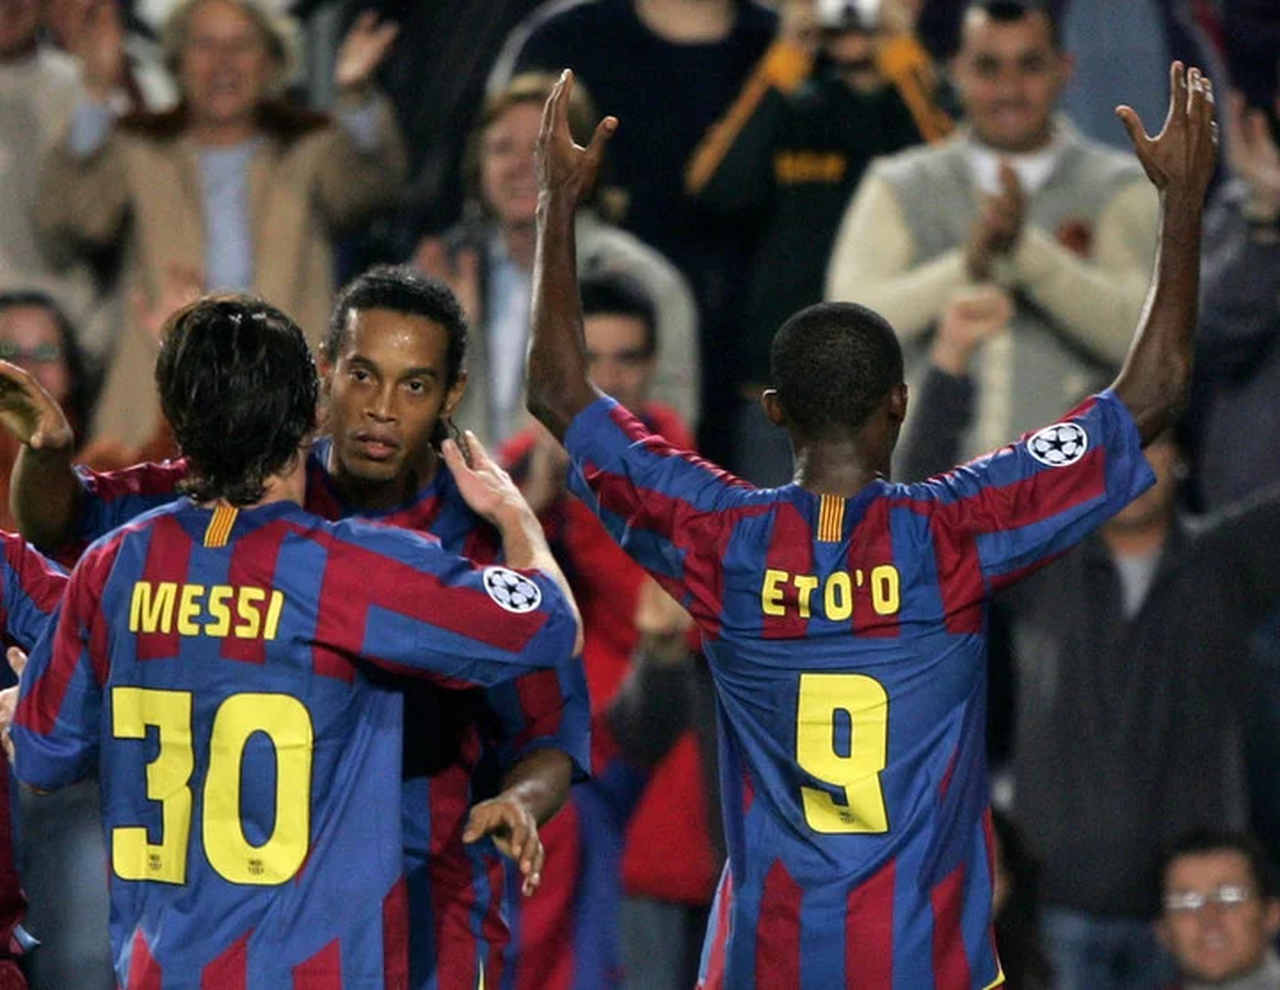 Messi com a camisa 30 no Barcelona, acompanhado de Ronaldinho e Eto'o